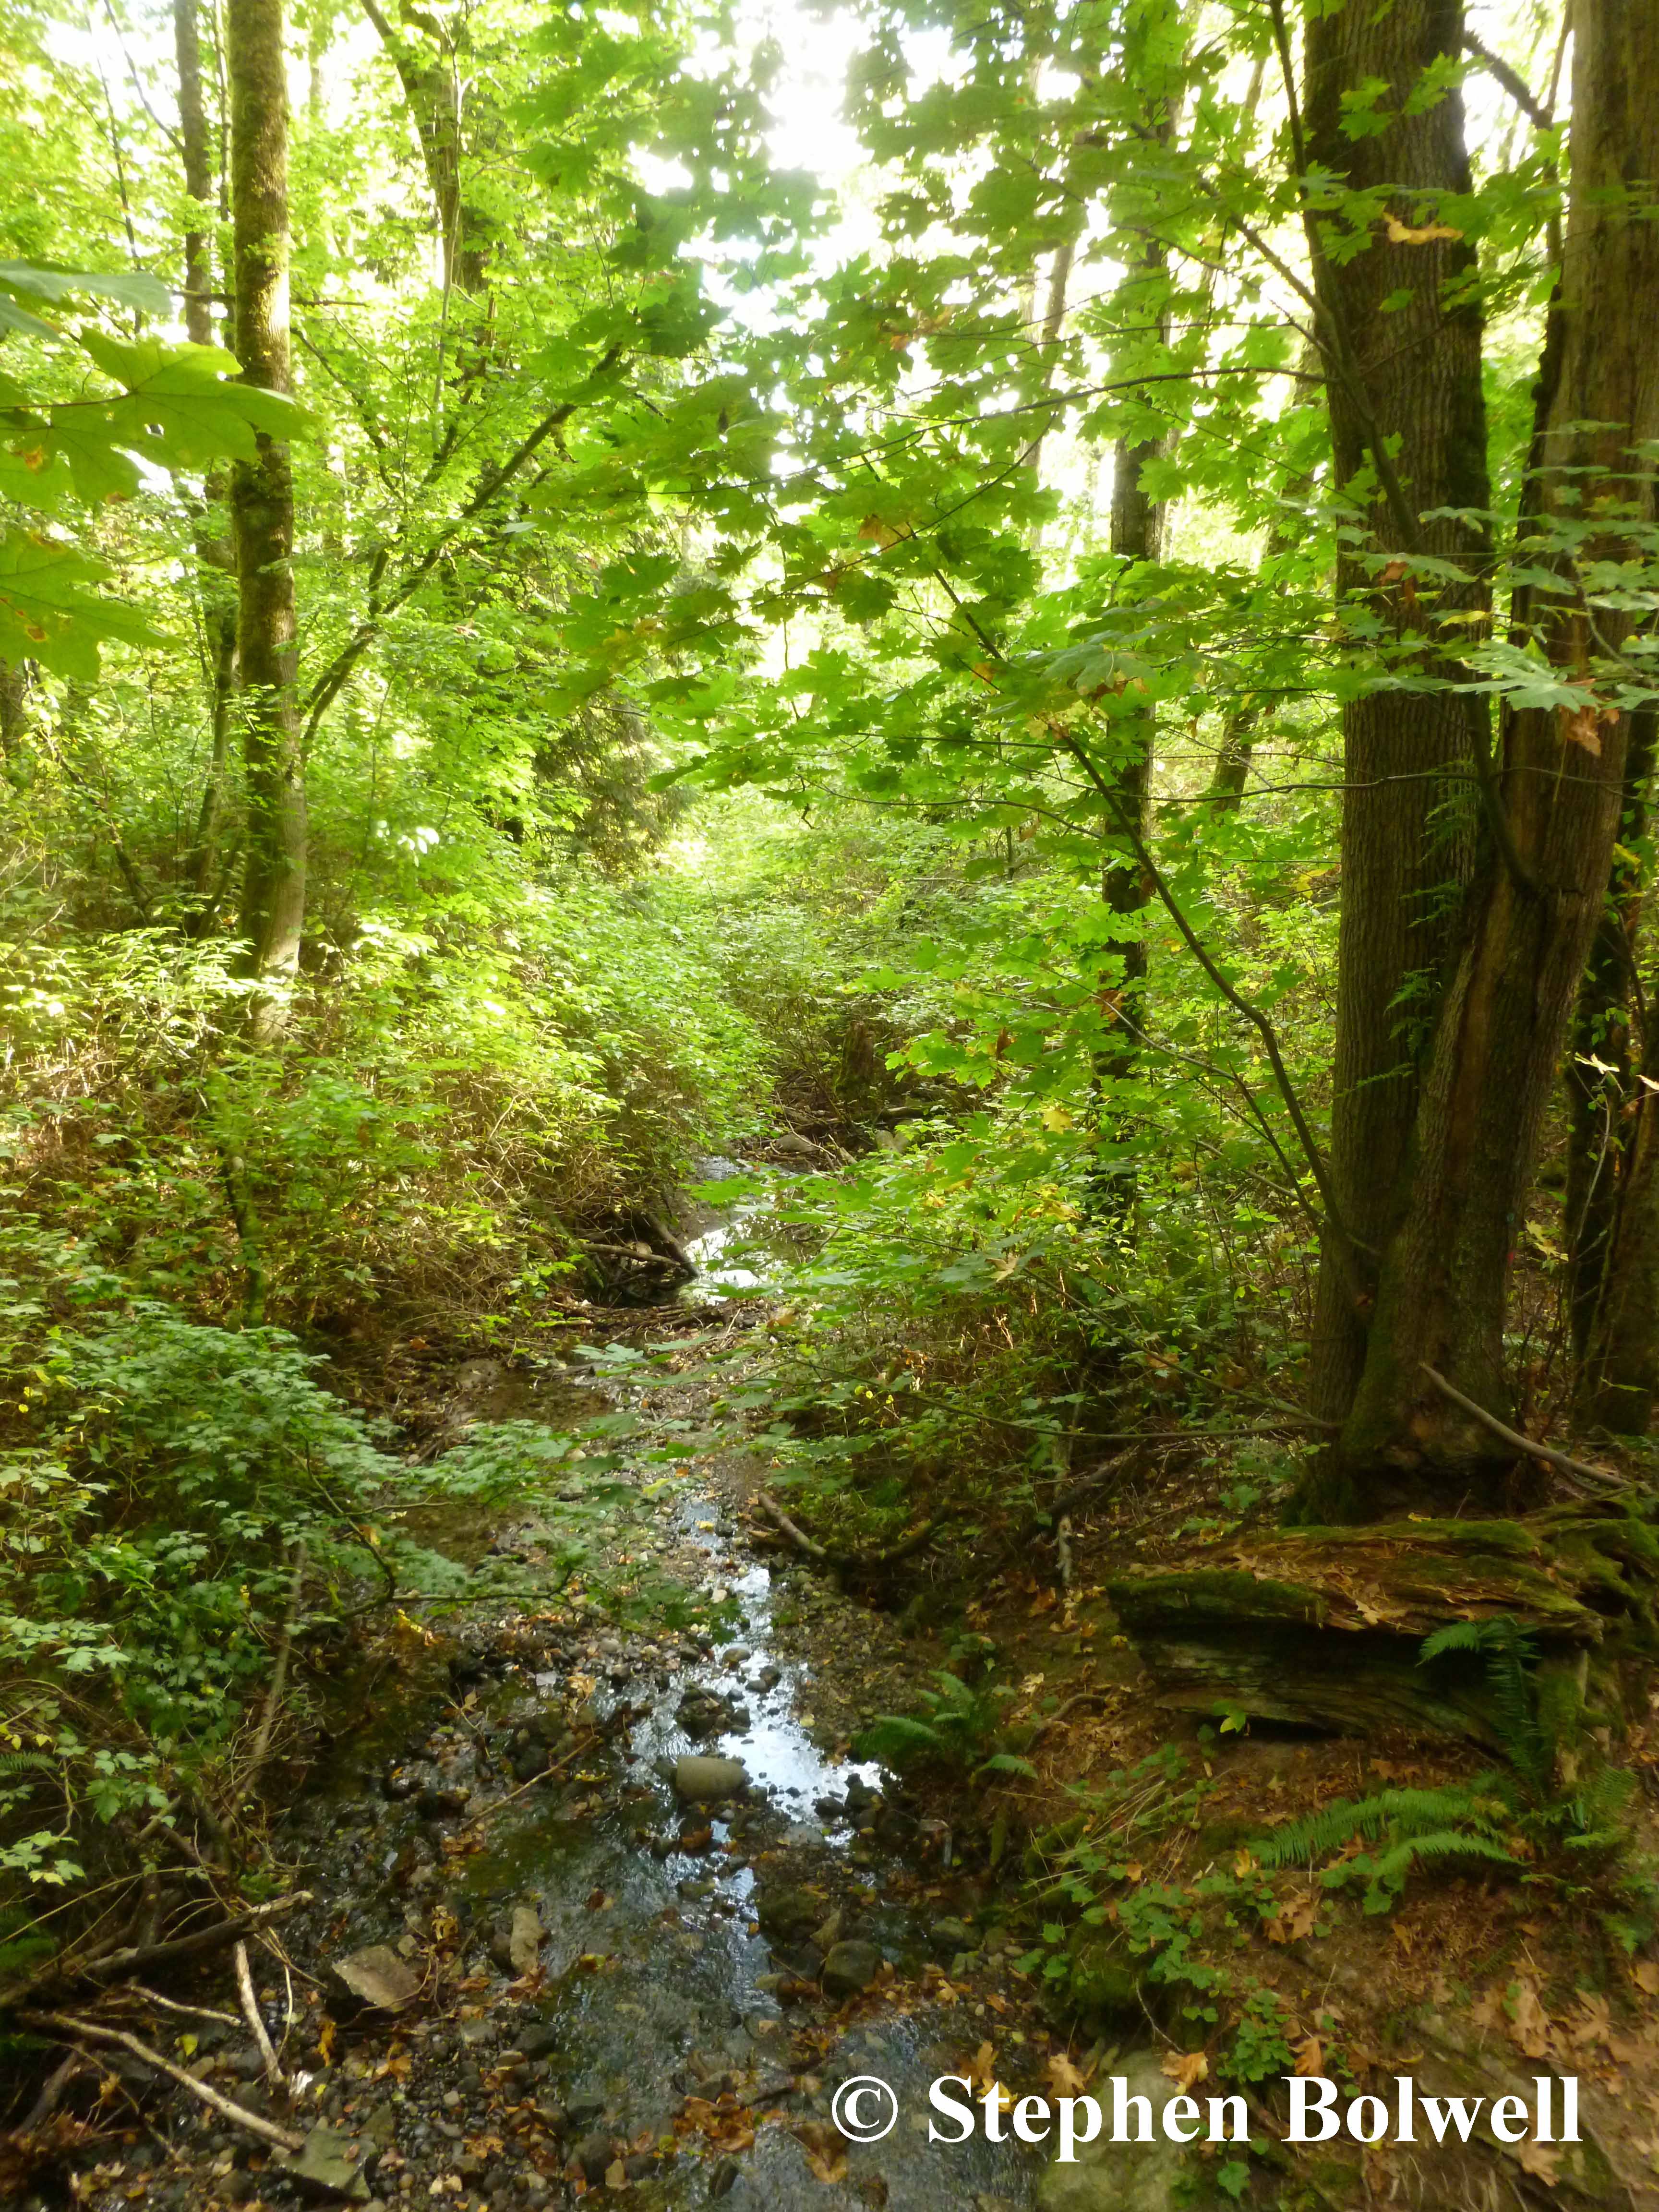 The stream in spring.